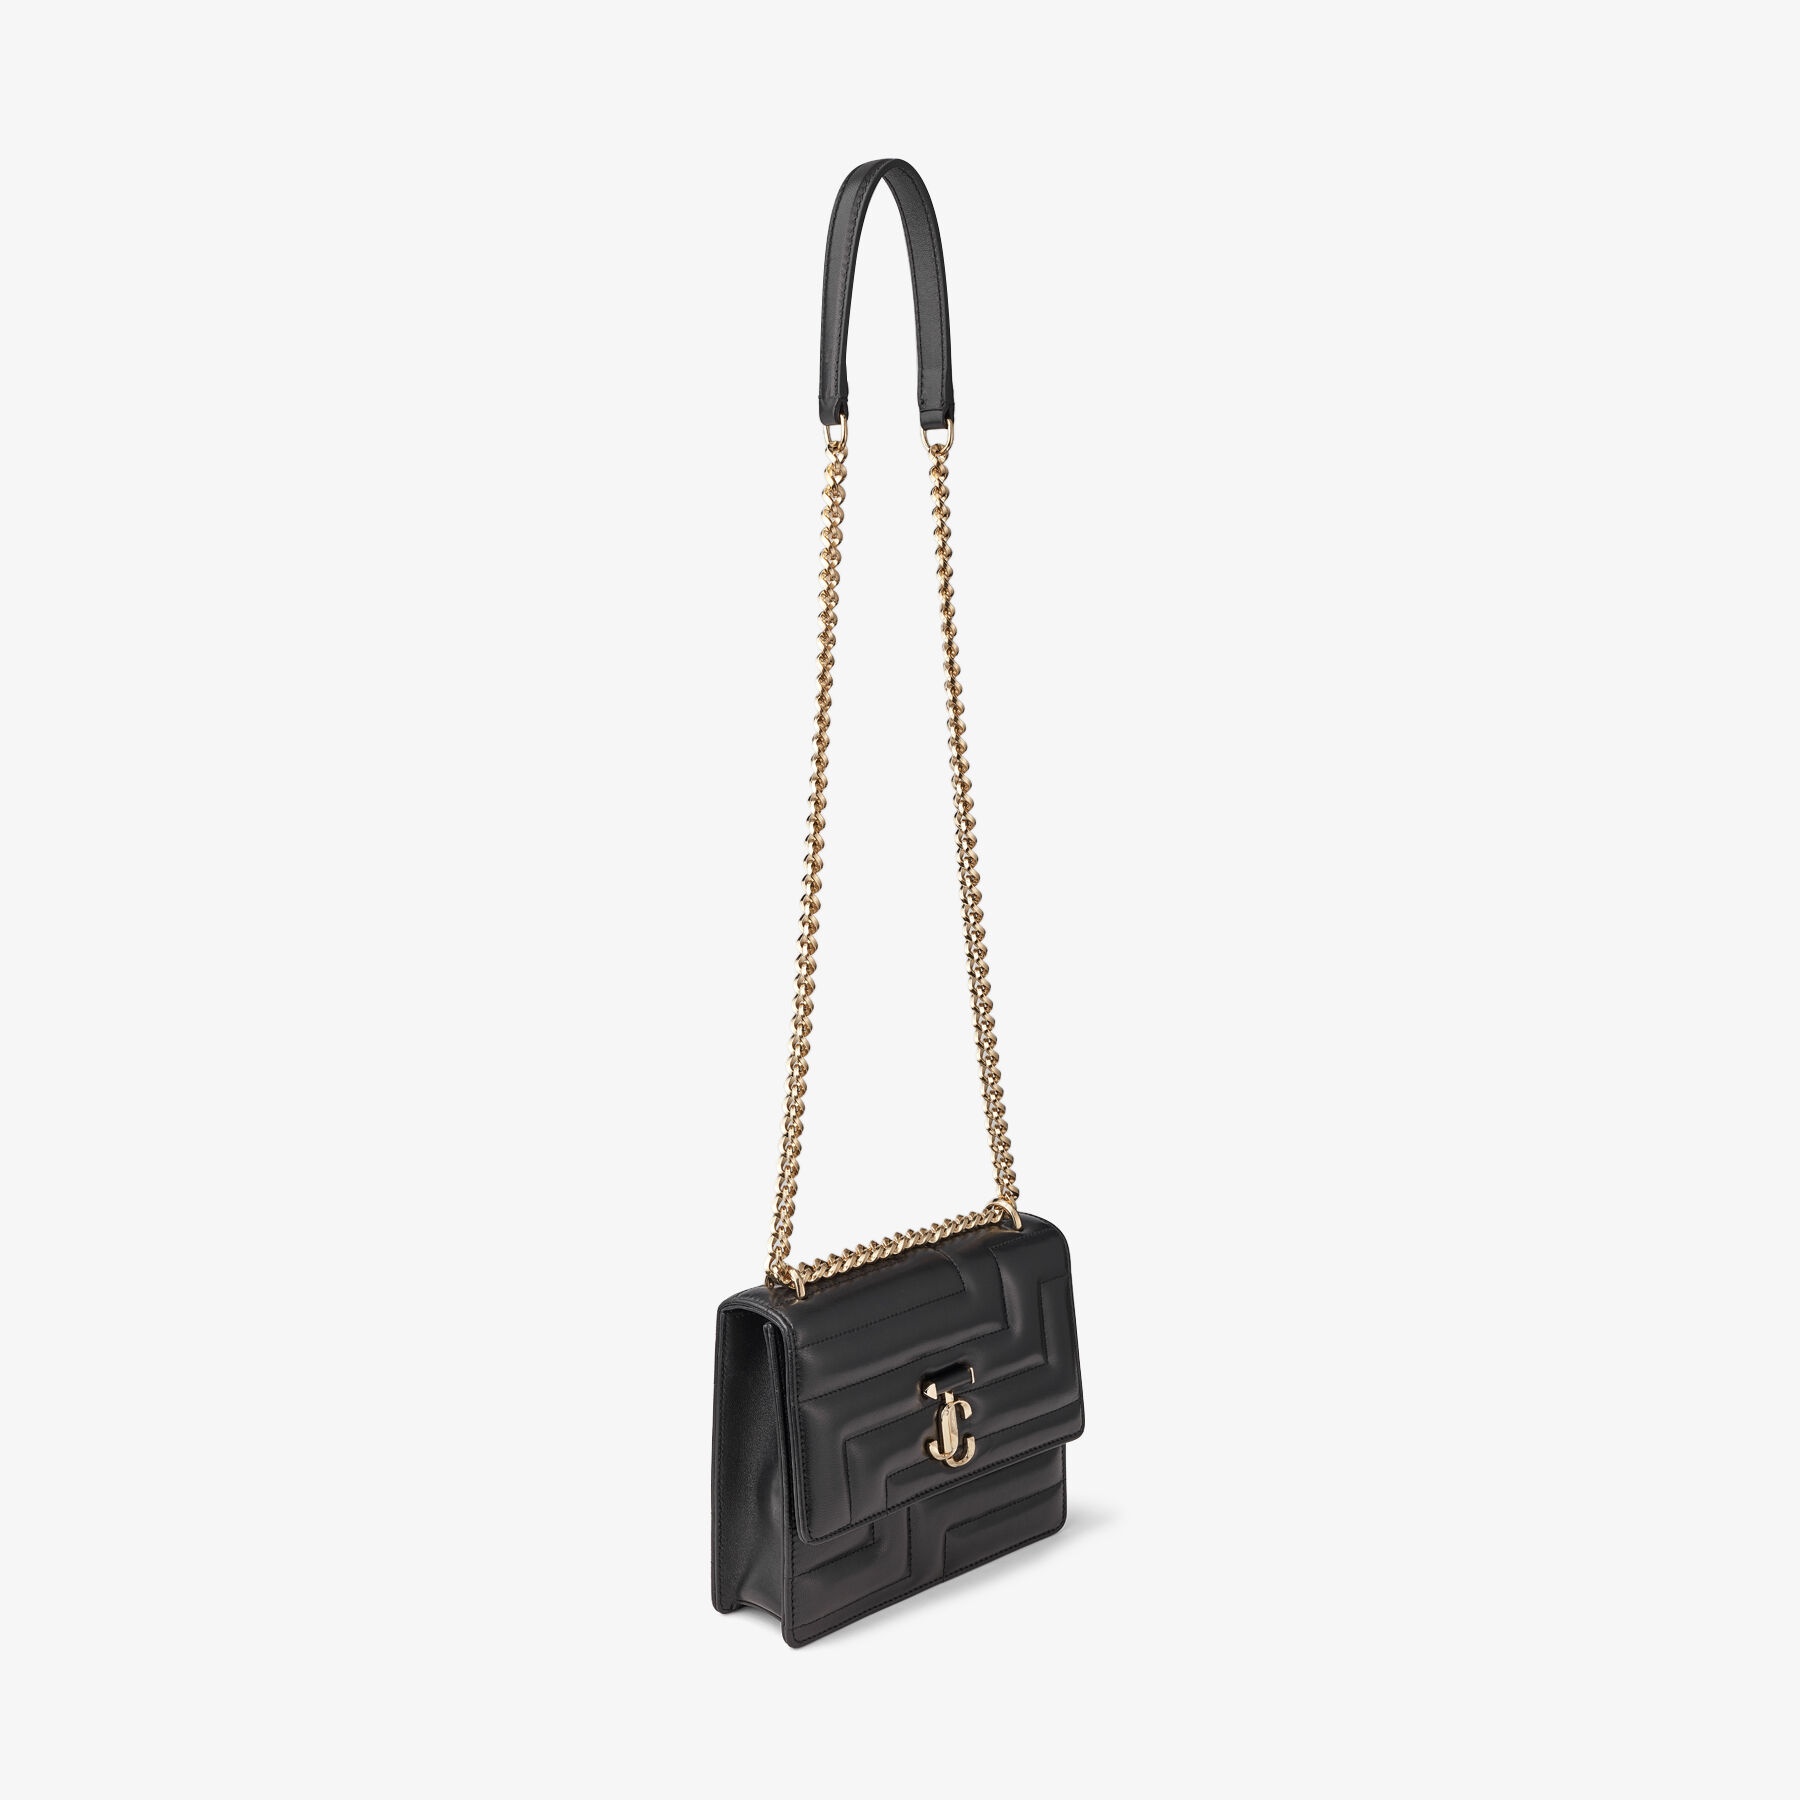 Varenne Avenue Quad
Black Avenue Nappa Leather Bag with Light Gold JC Emblem - 3